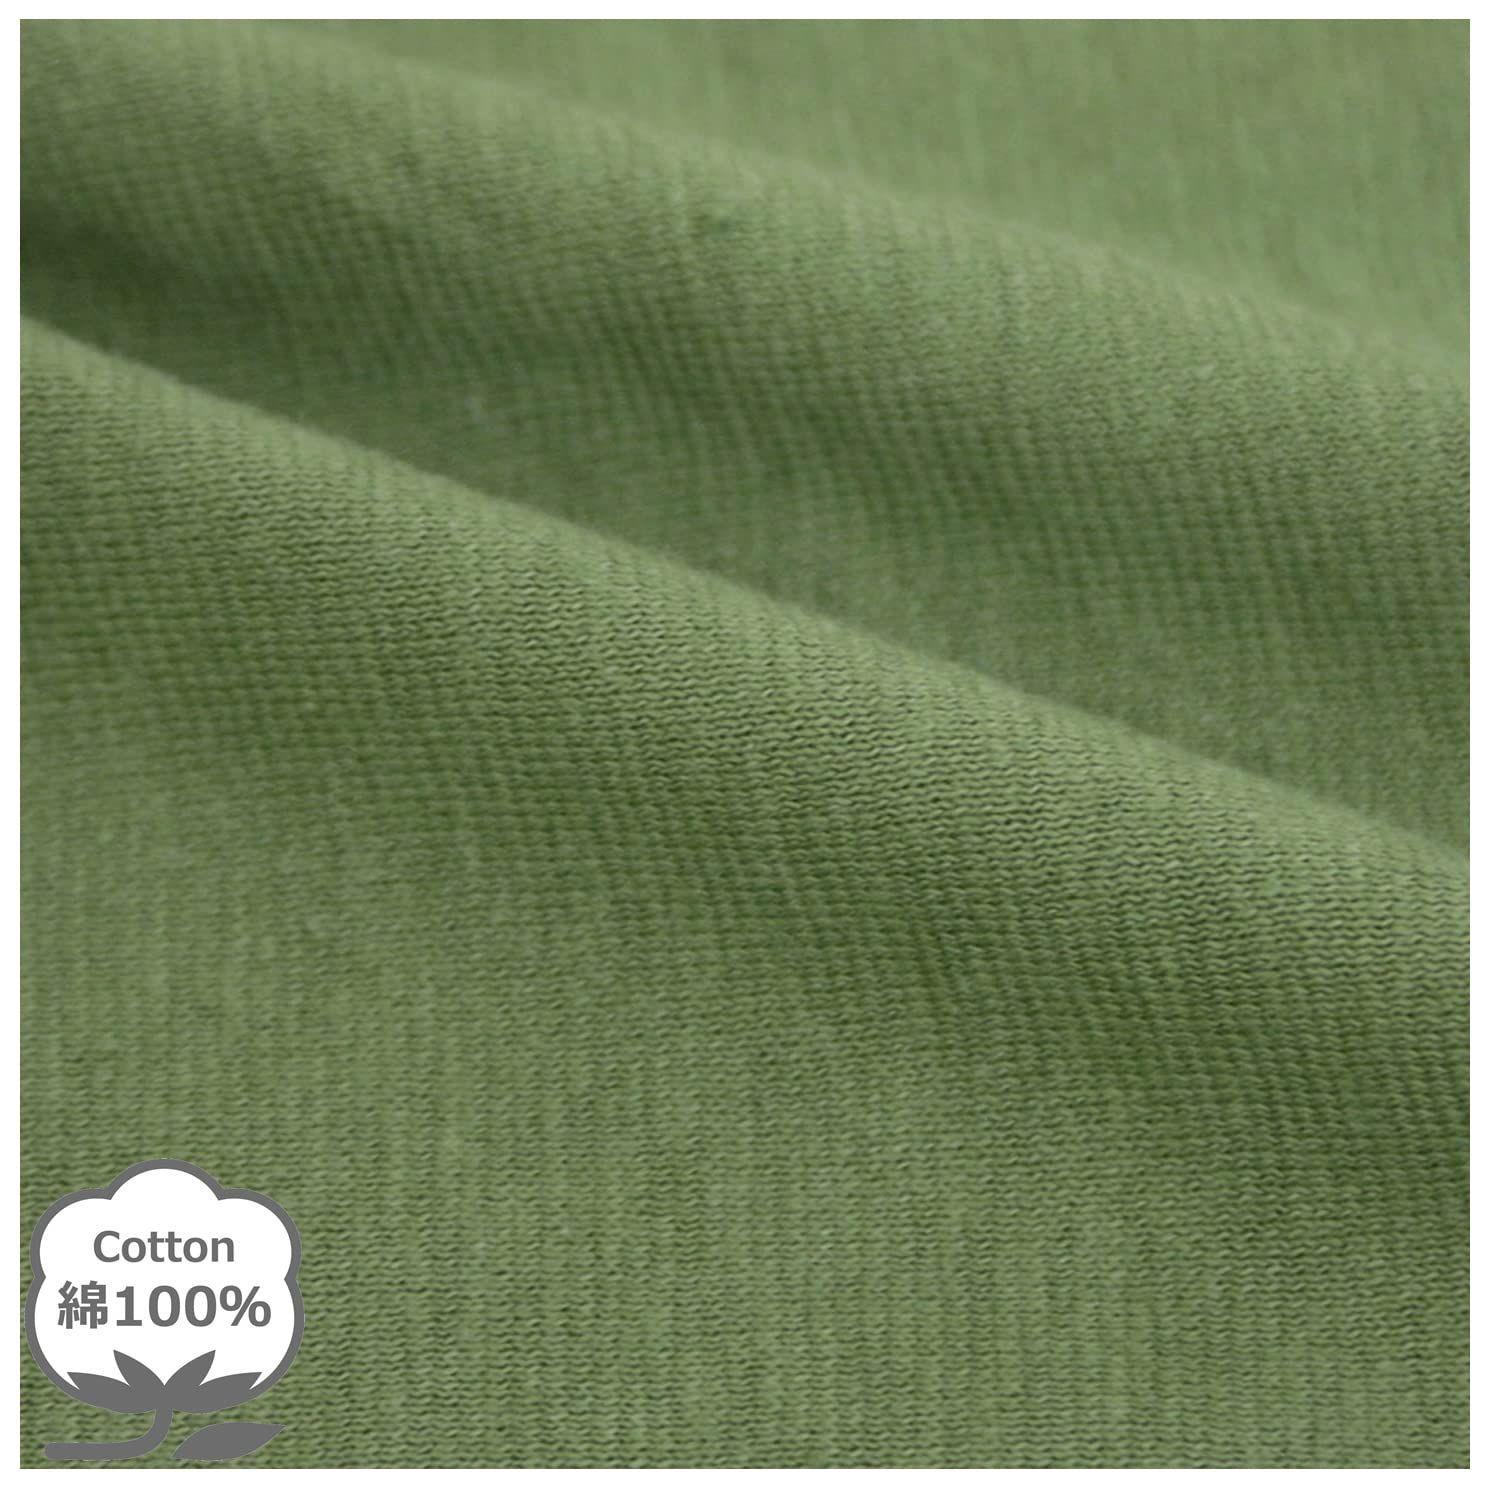 おすすめ】 35×50cm_オリーブグリーン メリーナイト 枕カバー 無地カラー オリーブグリーン 約35×50cm ファスナー式 まくらが入れやすい  綿10 - メルカリ